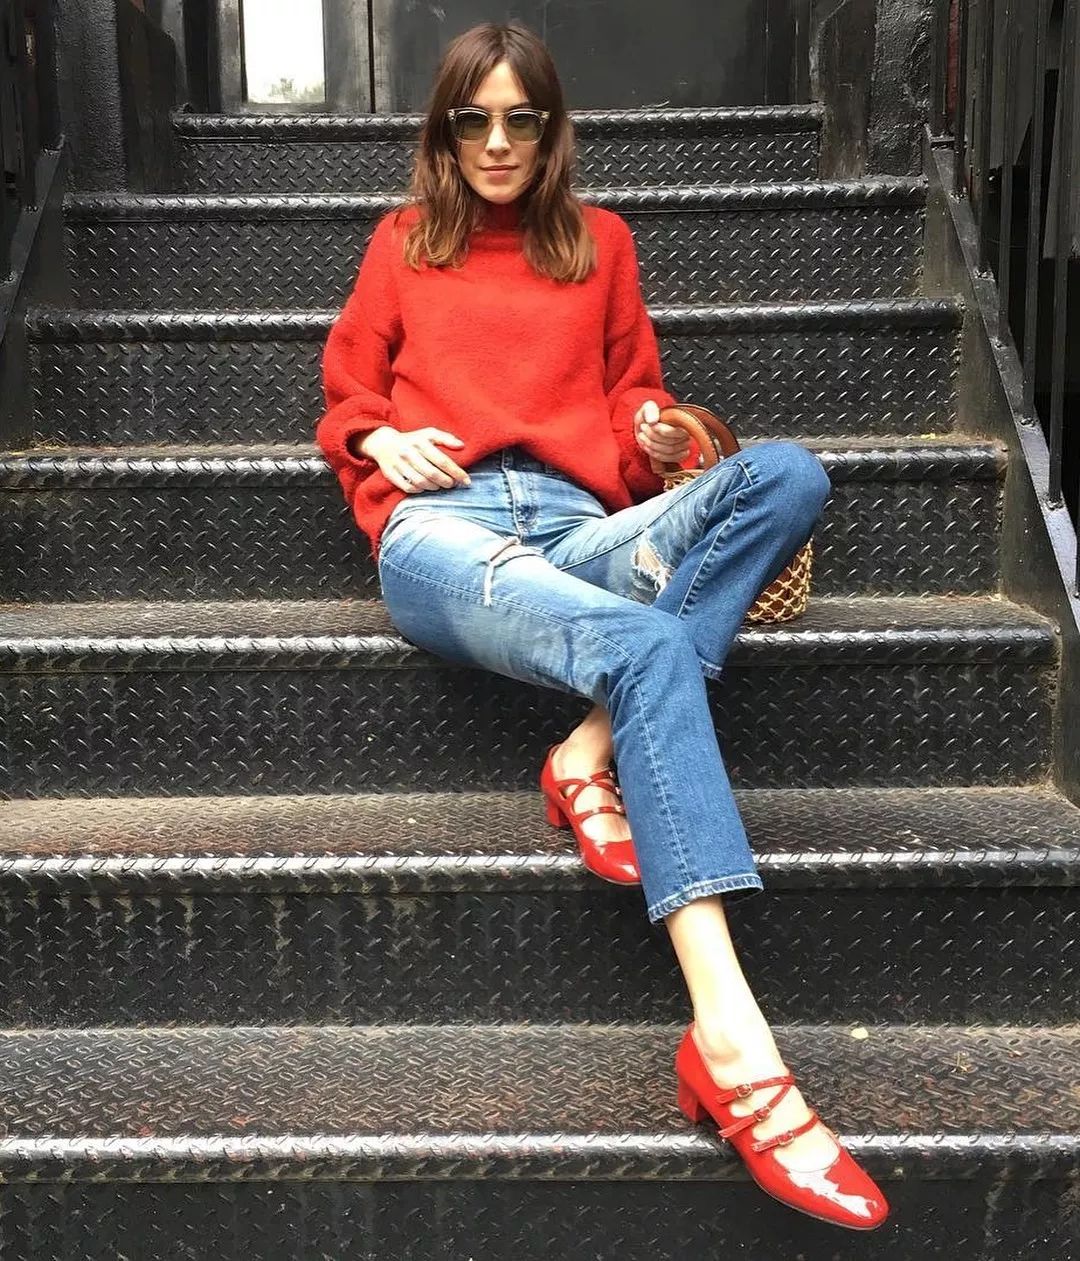 Đừng mãi quanh quẩn với giày đen/trắng nữa, giày đỏ mới thực sự giúp nâng tầm style và khiến bạn trông sang như gái Pháp - Ảnh 6.